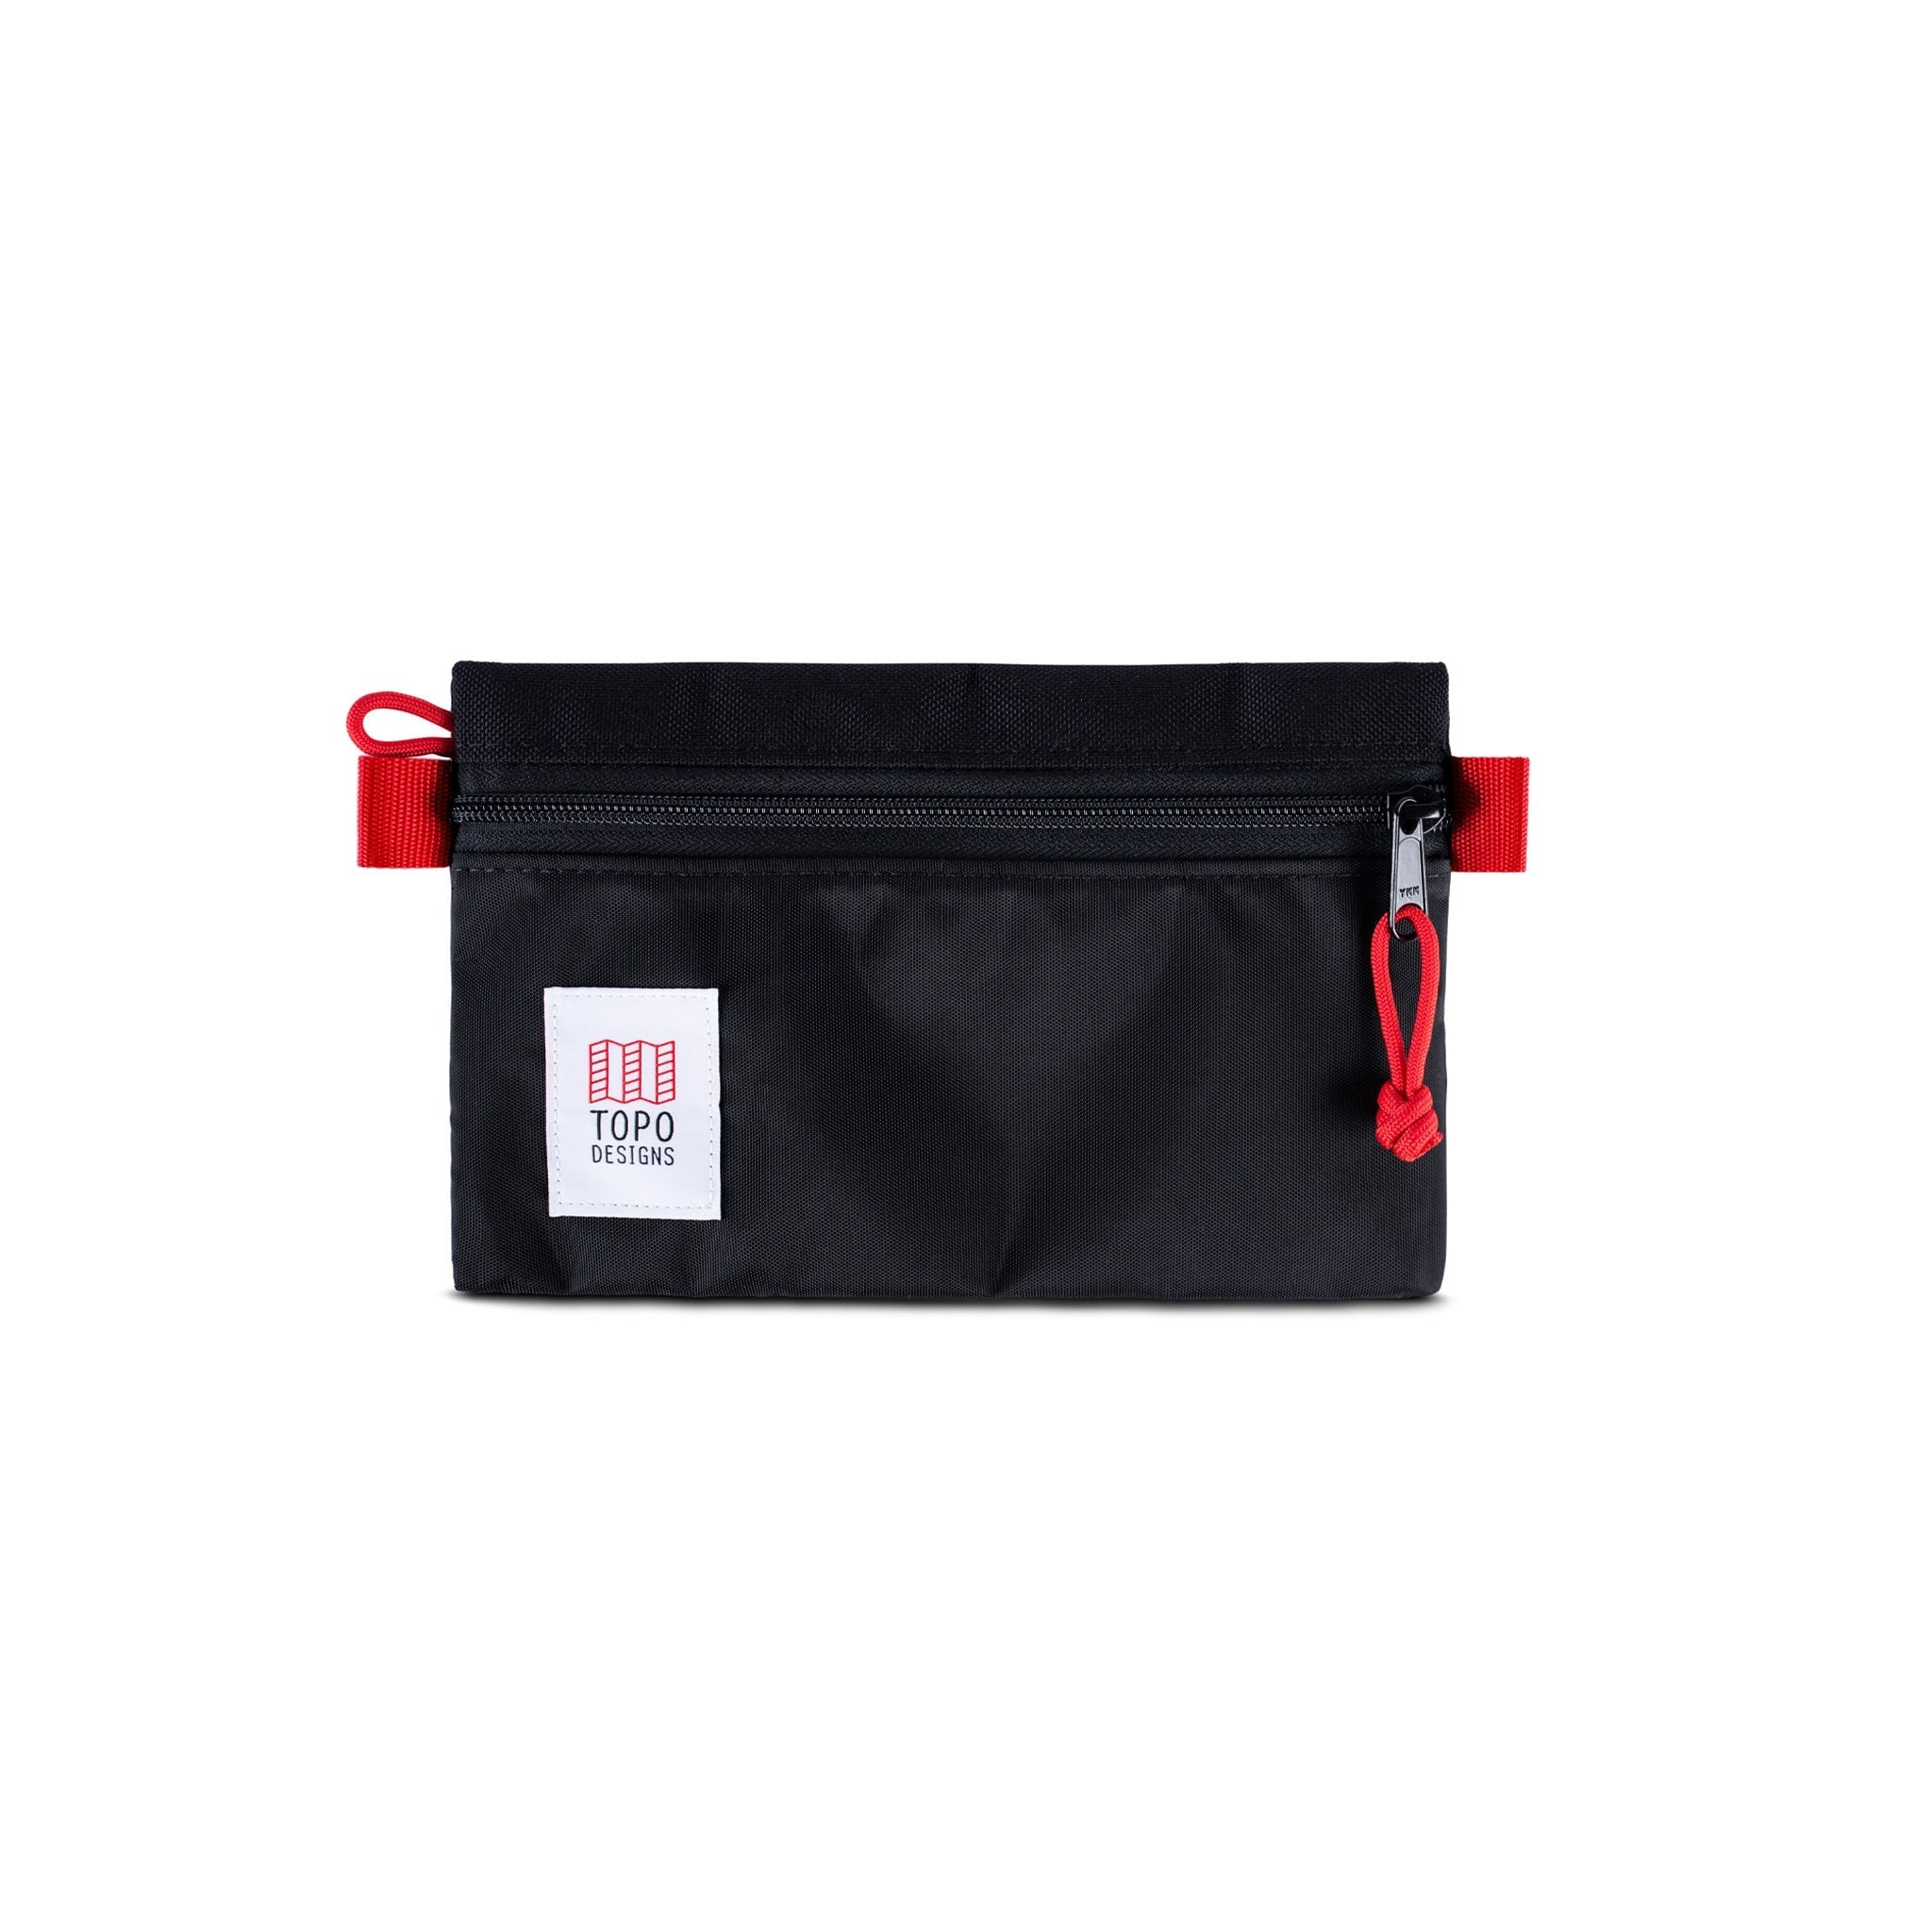 Topo Designs Accessory Small Bag Kleintasche Topo Designs Black/Black 